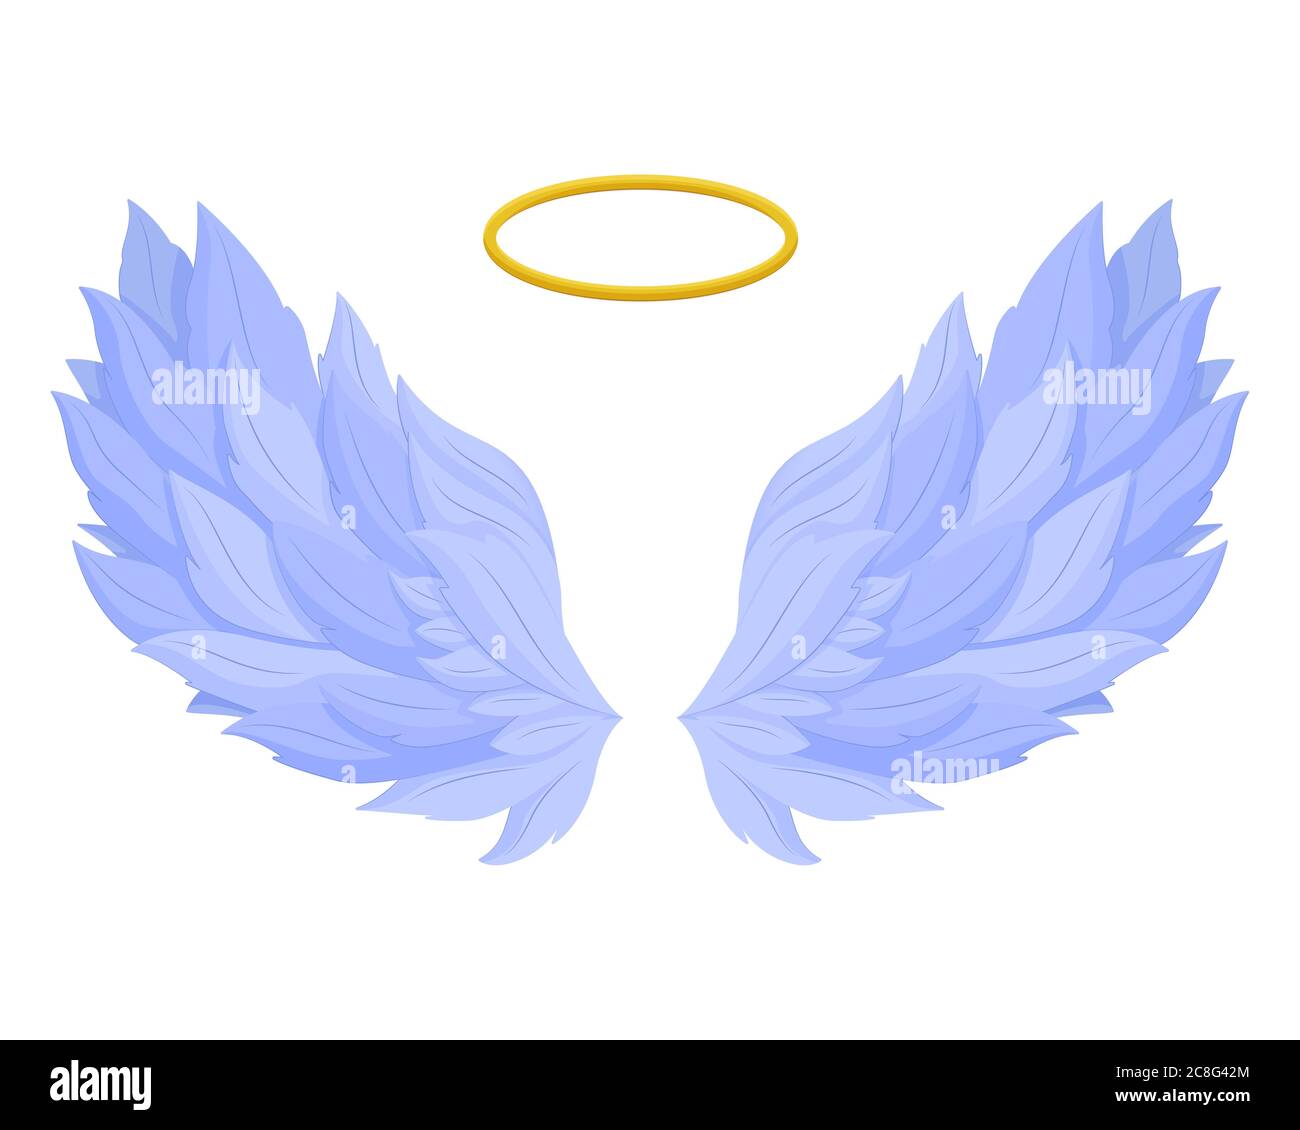 Ali di angelo con nimbus. Sacre ali blu della libertà celeste con corona dorata al centro. Illustrazione Vettoriale